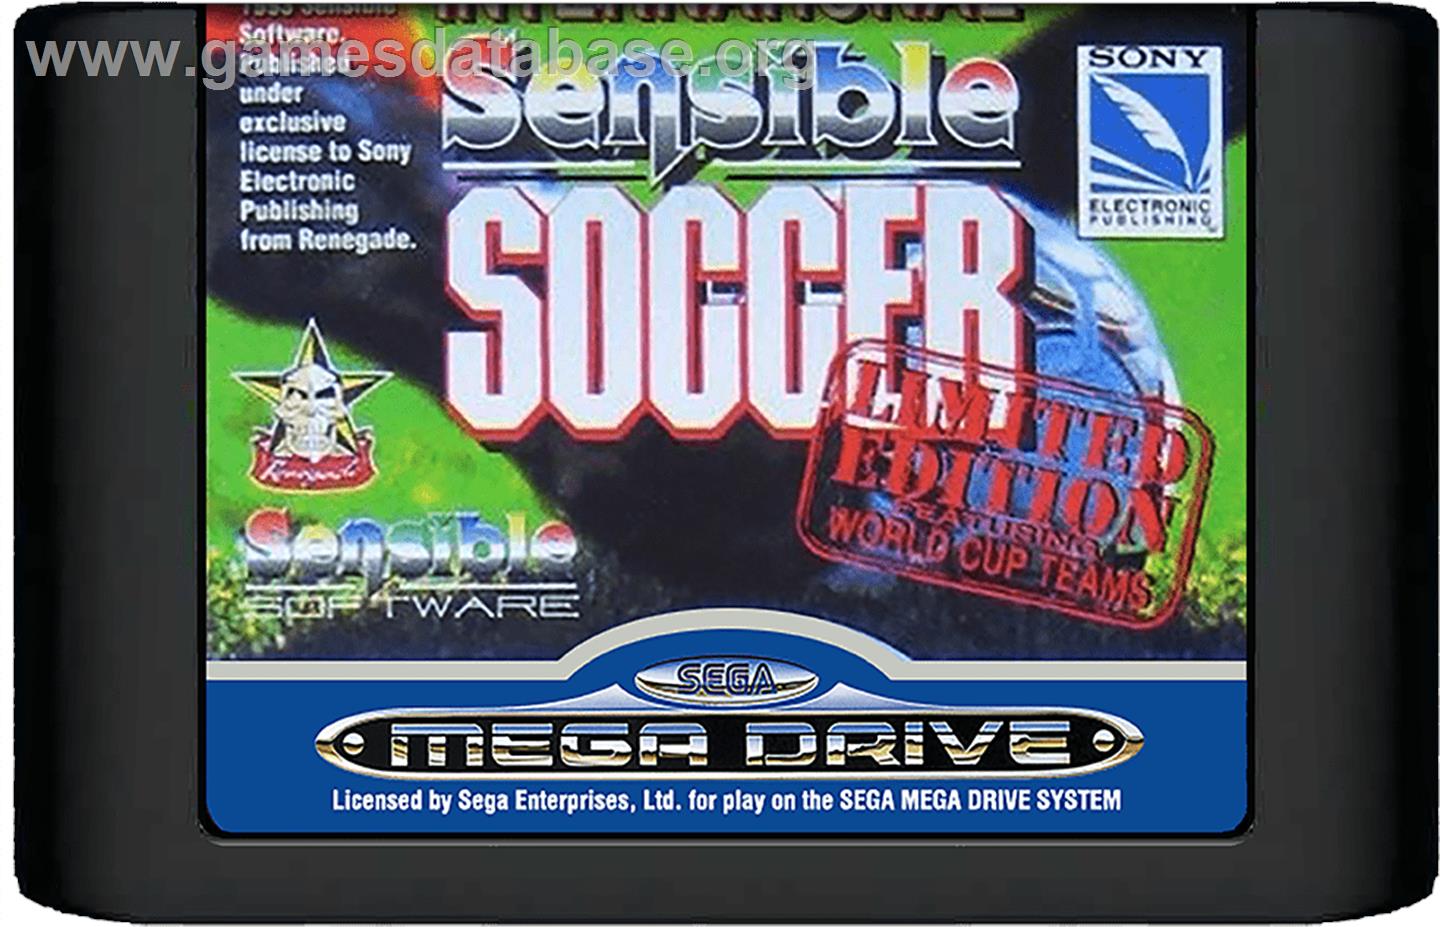 International Sensible Soccer - Sega Genesis - Artwork - Cartridge